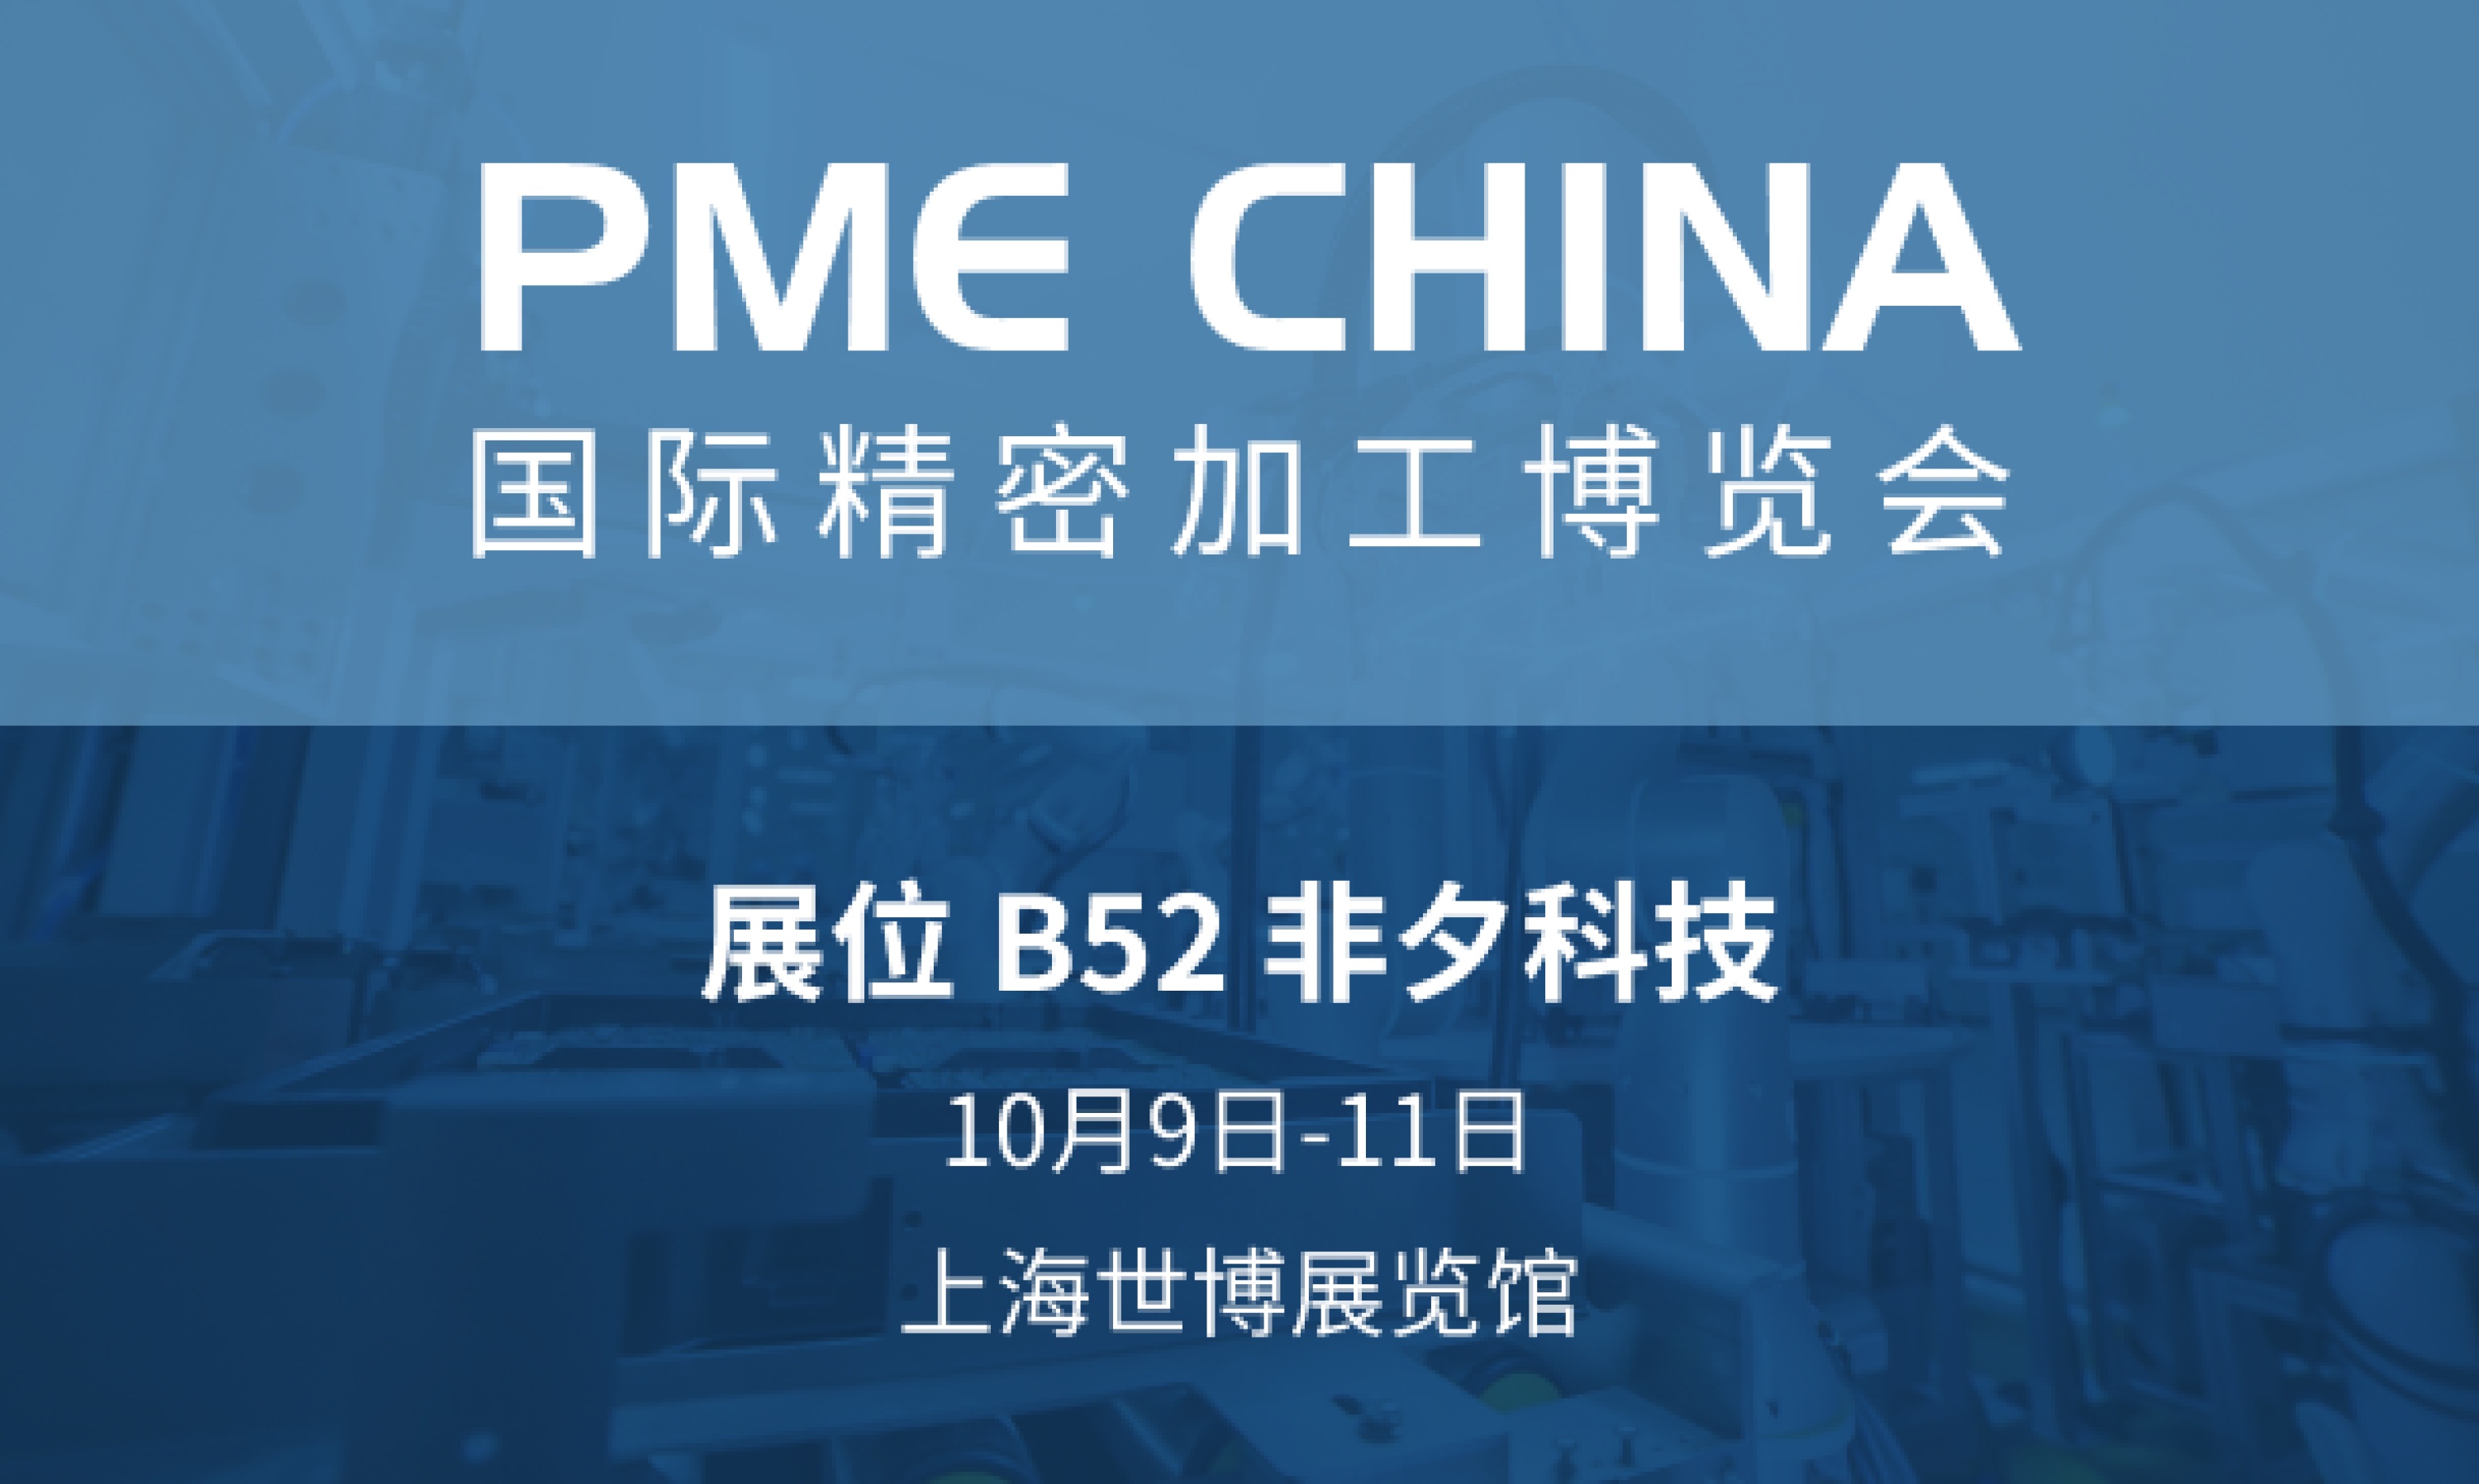 PME 国际精密加工博览会